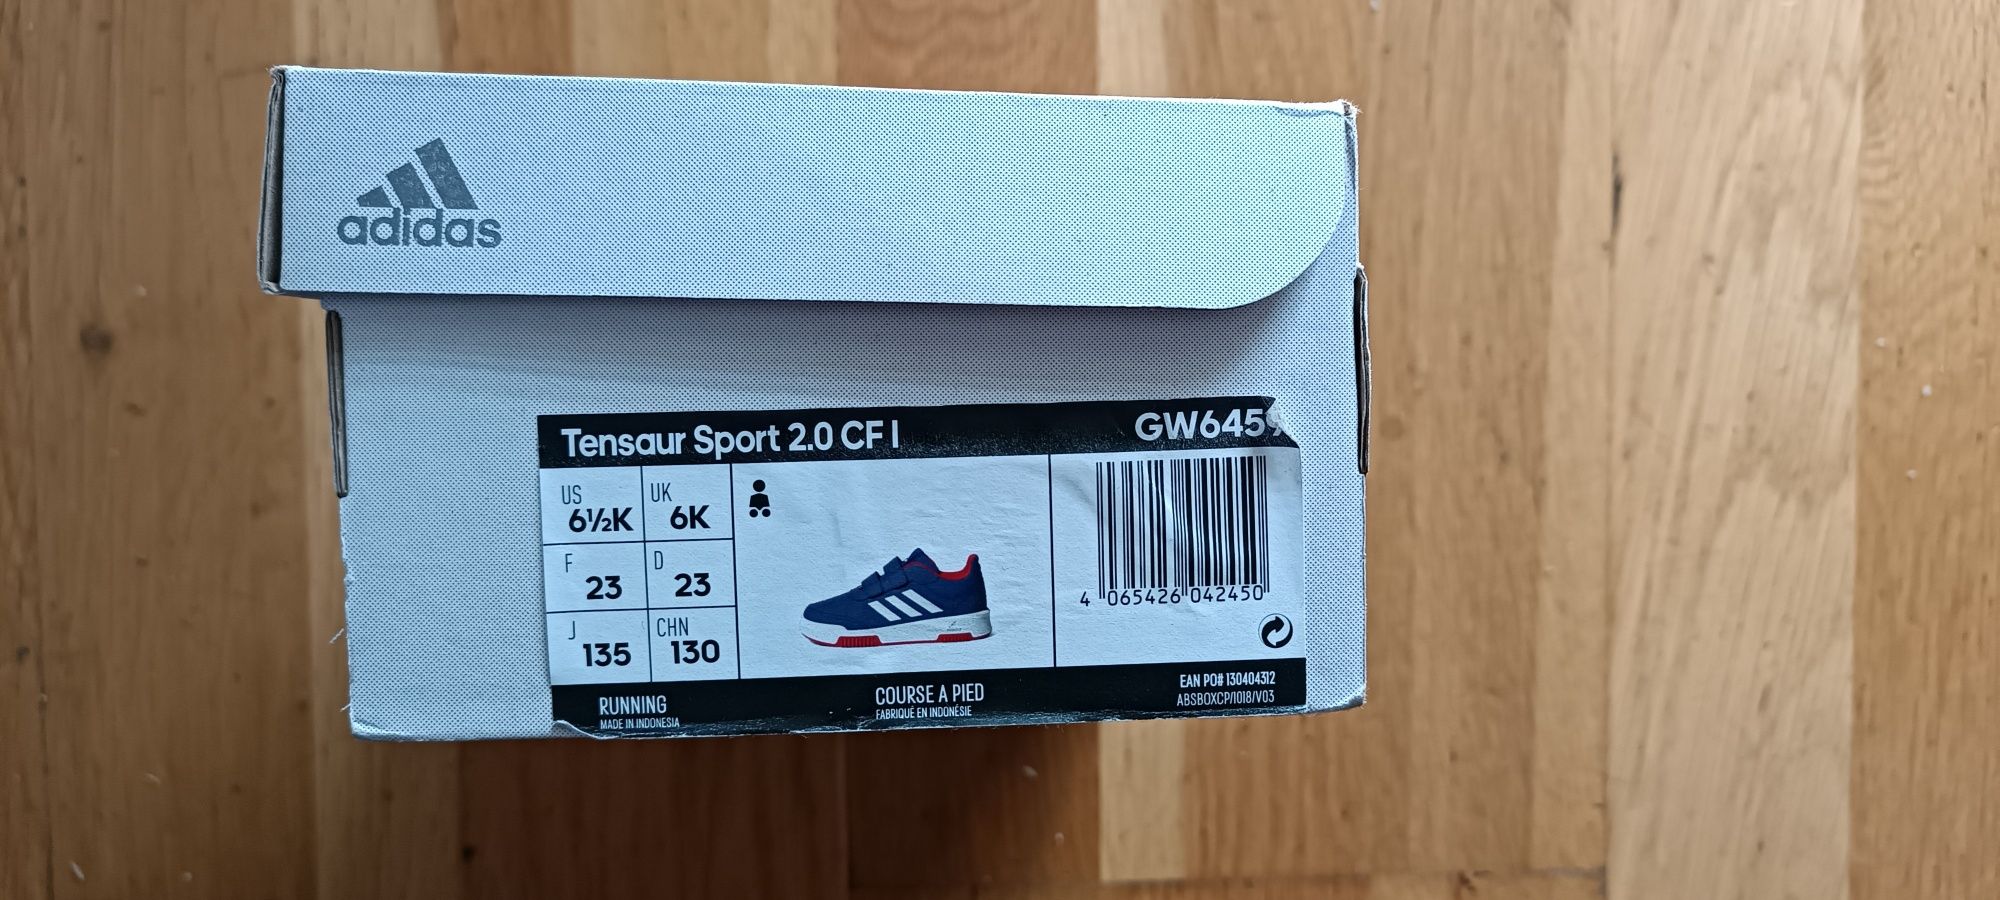 Buty Adidas Tensaur Sport 2.0, rozmiar 23, wkładka 14,5 cm